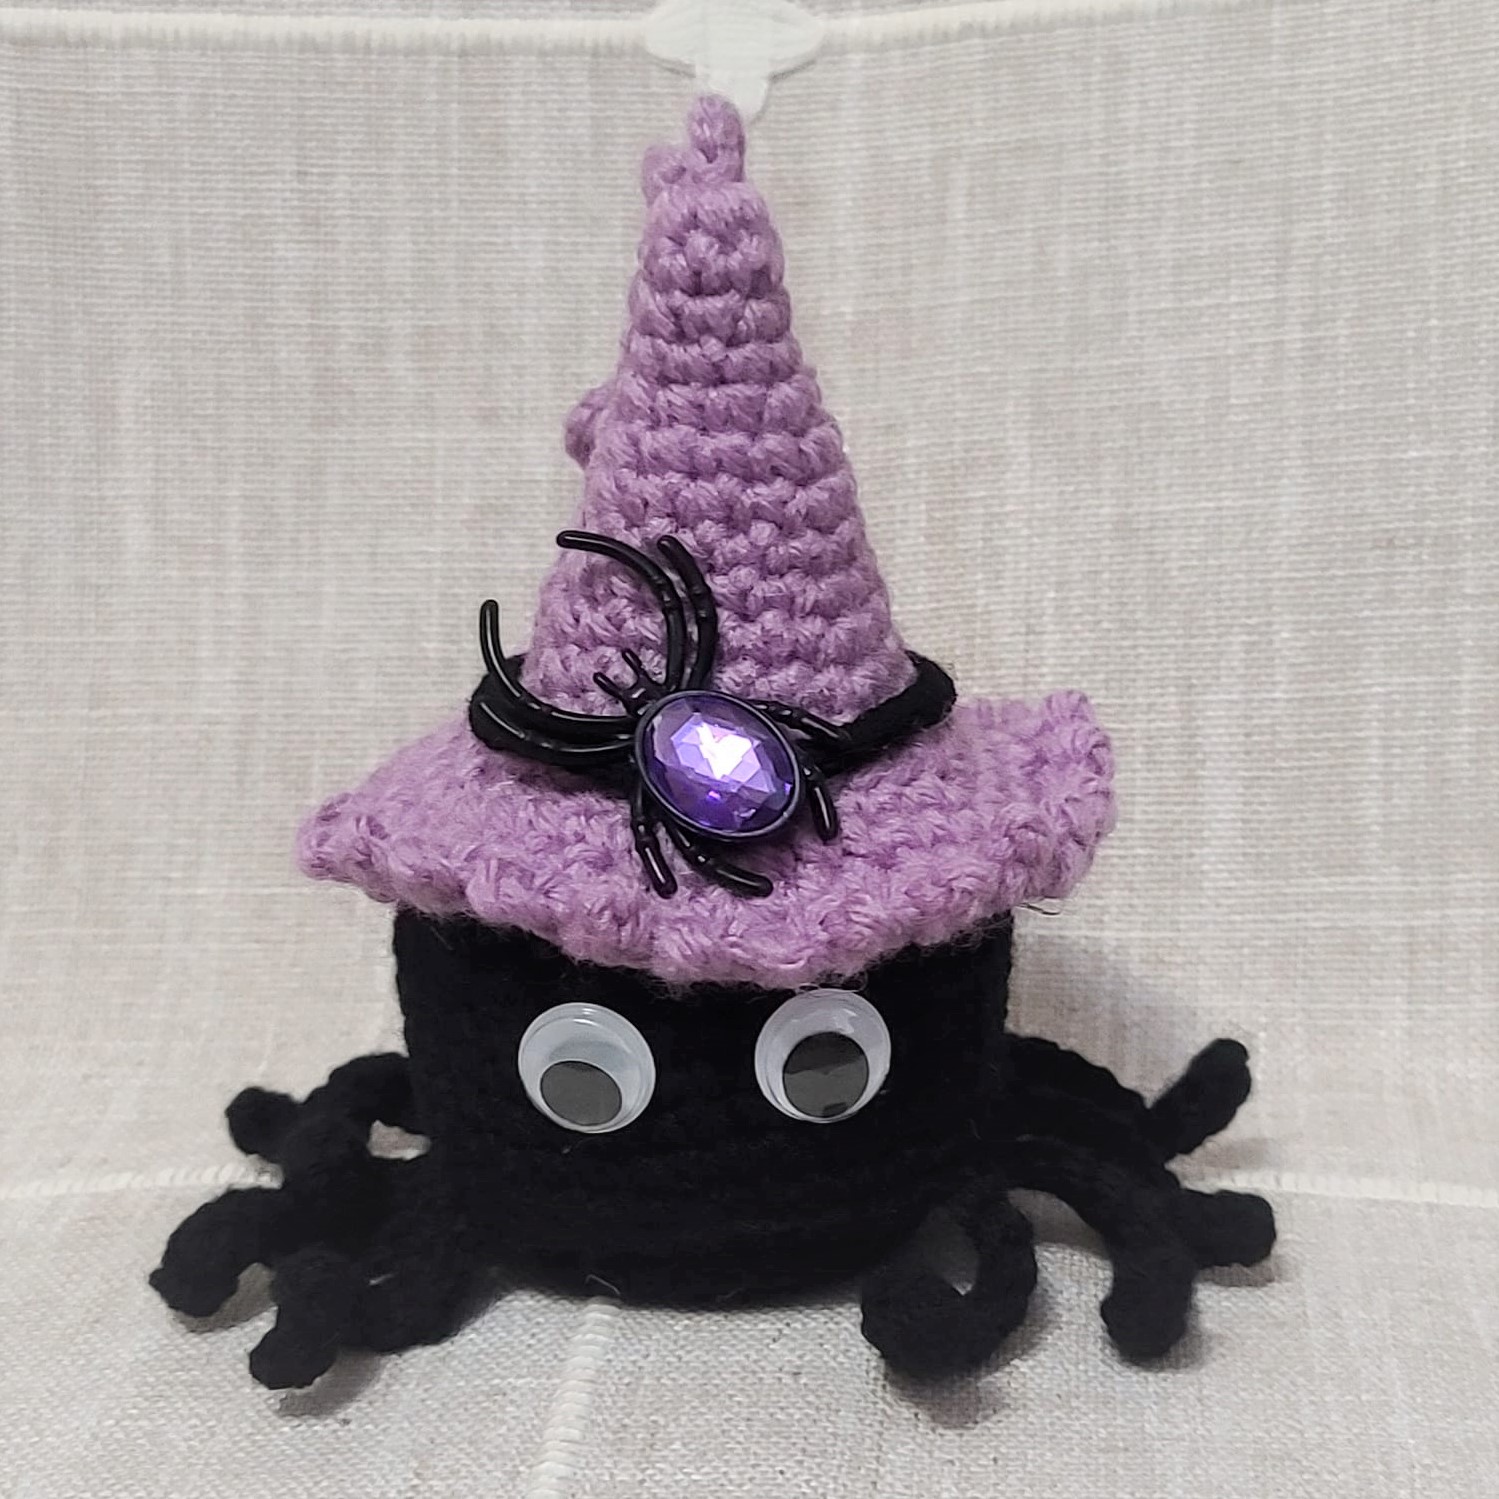 Crochet amigurumi halloween black spider purple witch hat